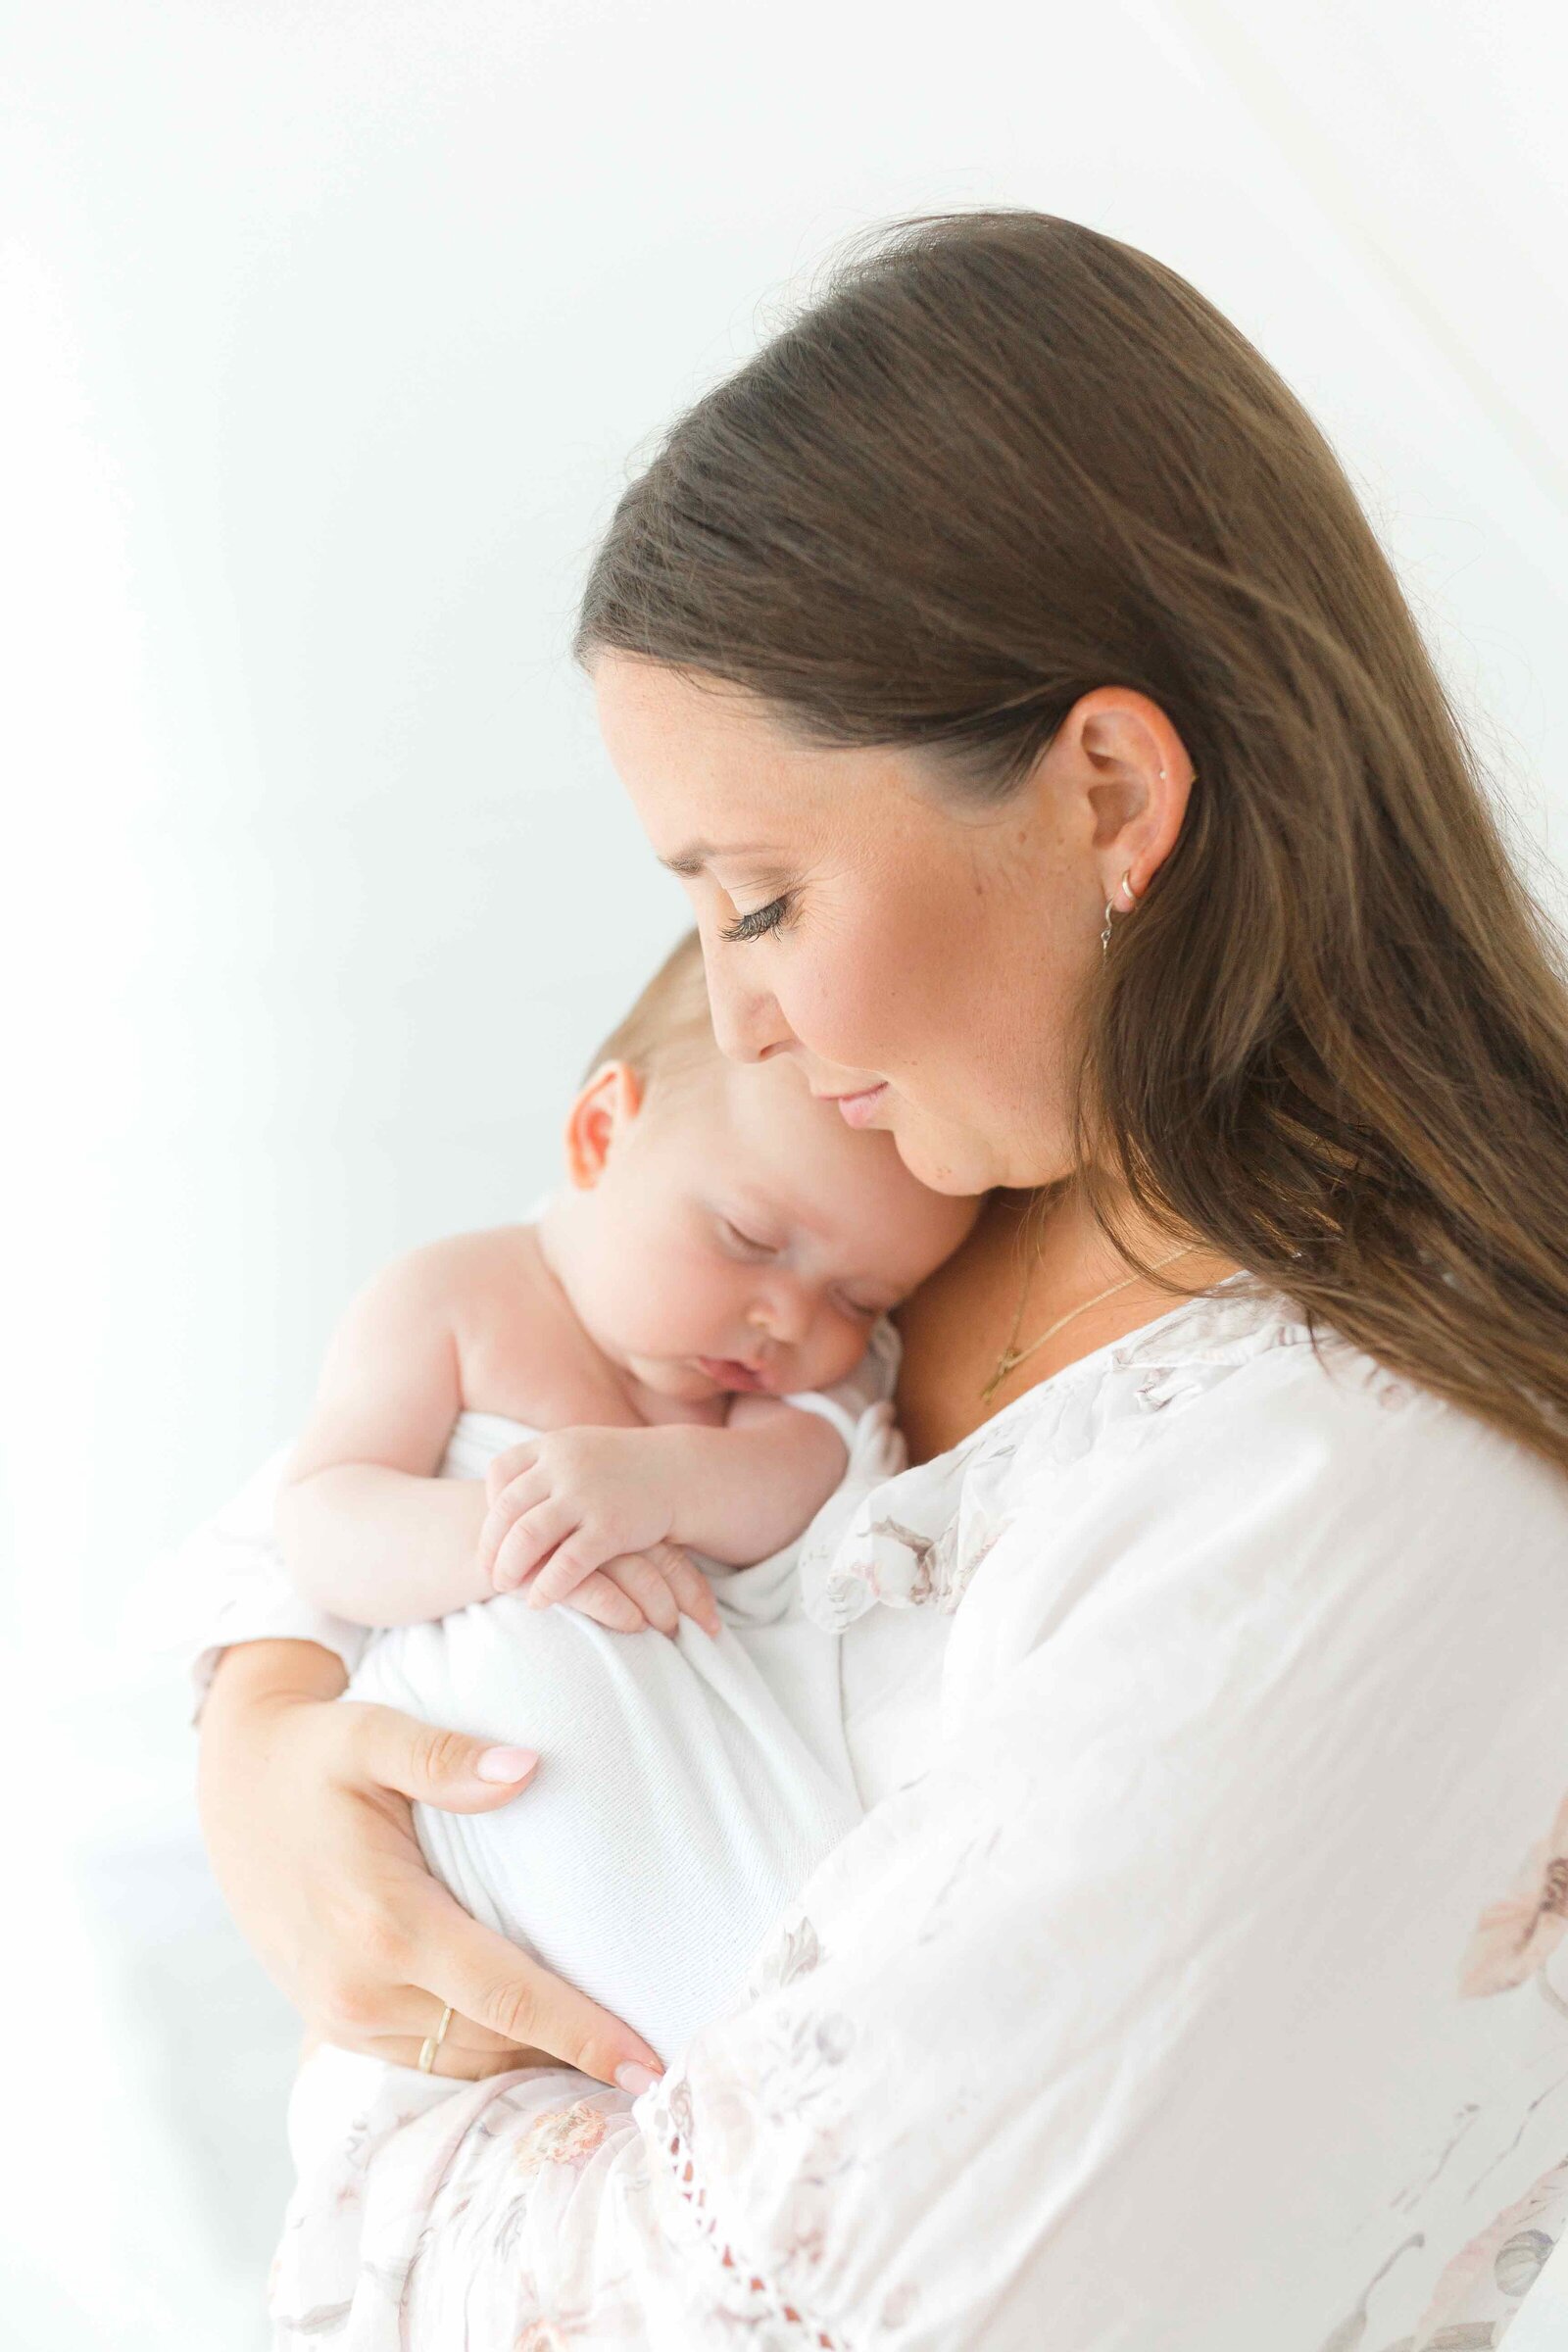 Neugeborenenfotoshooting: Mama in weißem Kleid hält ihr schlafendes Baby im Arm.